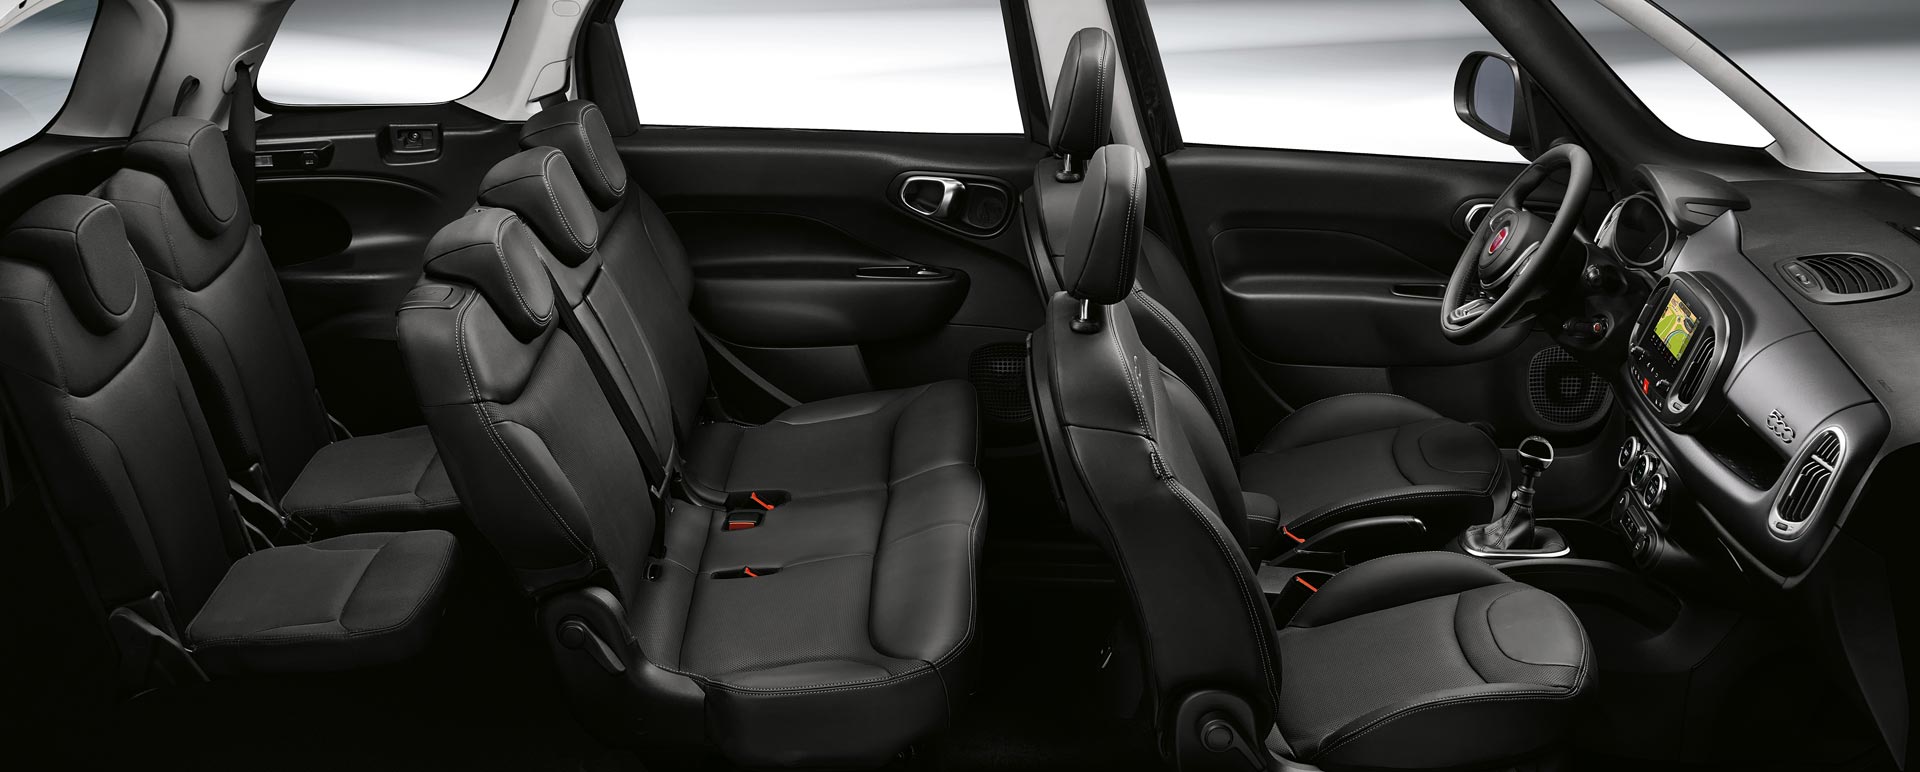 New-Fiat-500L-facelift-interior